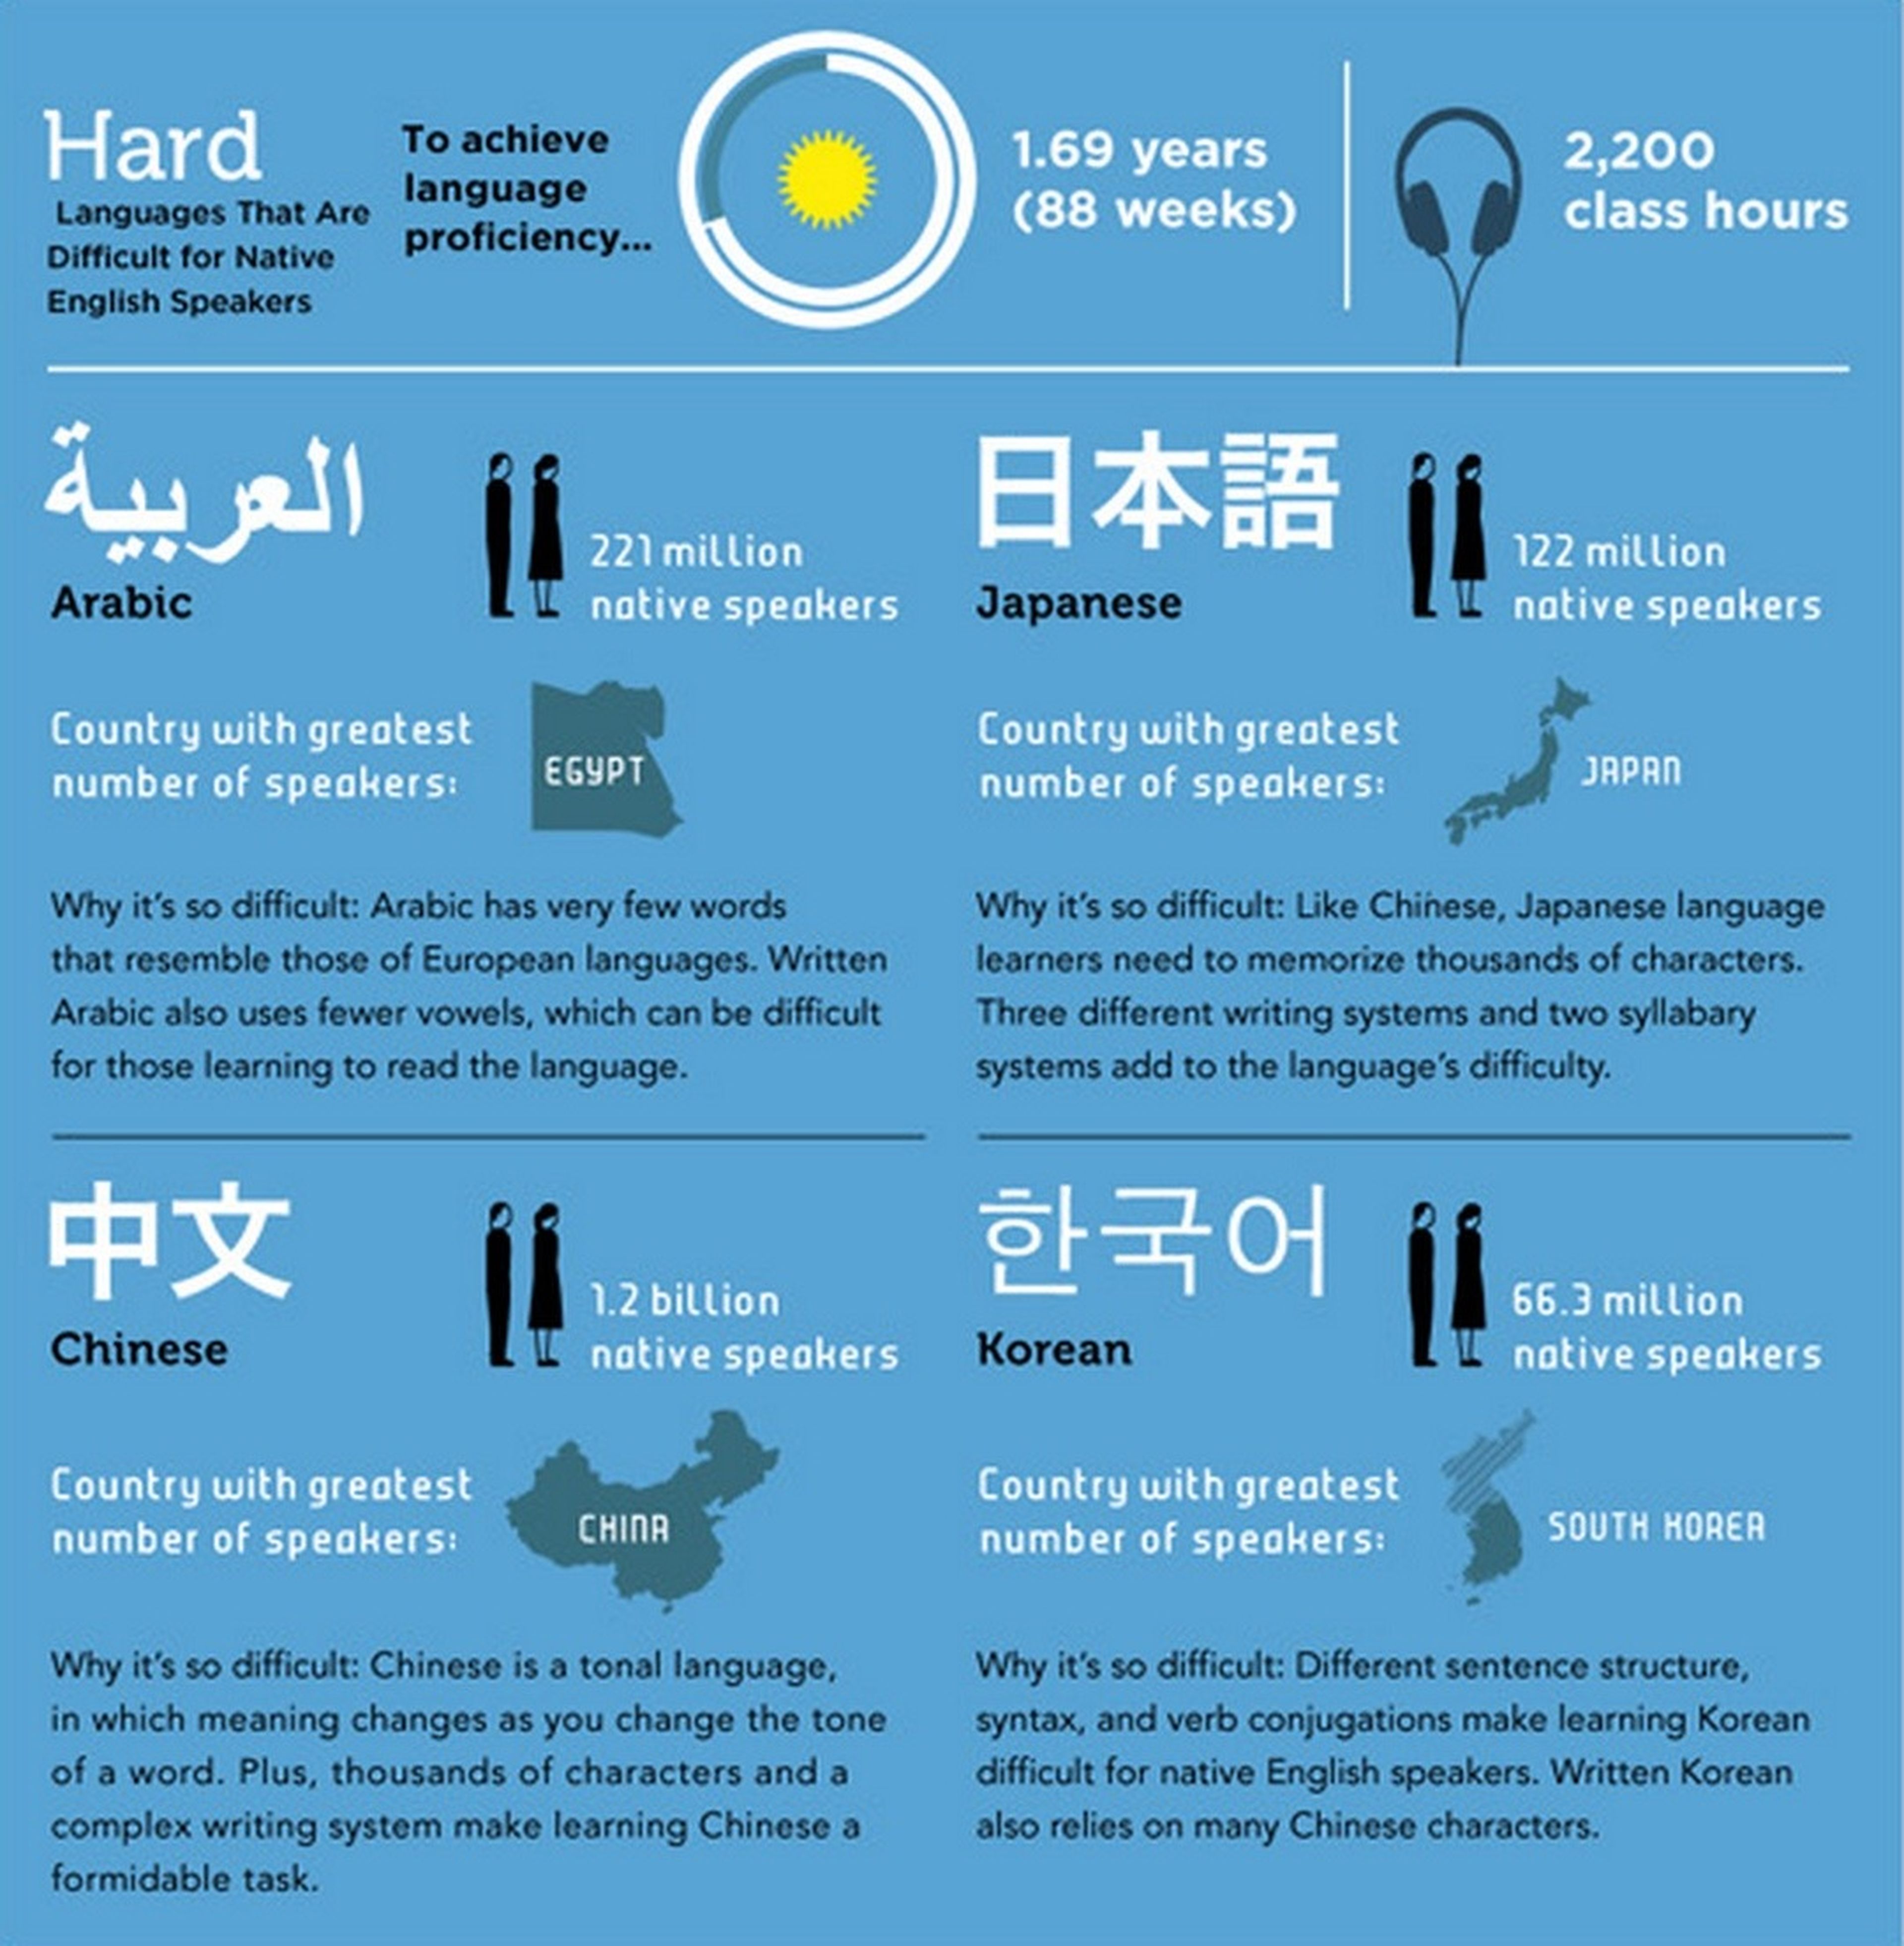 Estos son los idiomas más fáciles y más difíciles de aprender, según la ciencia